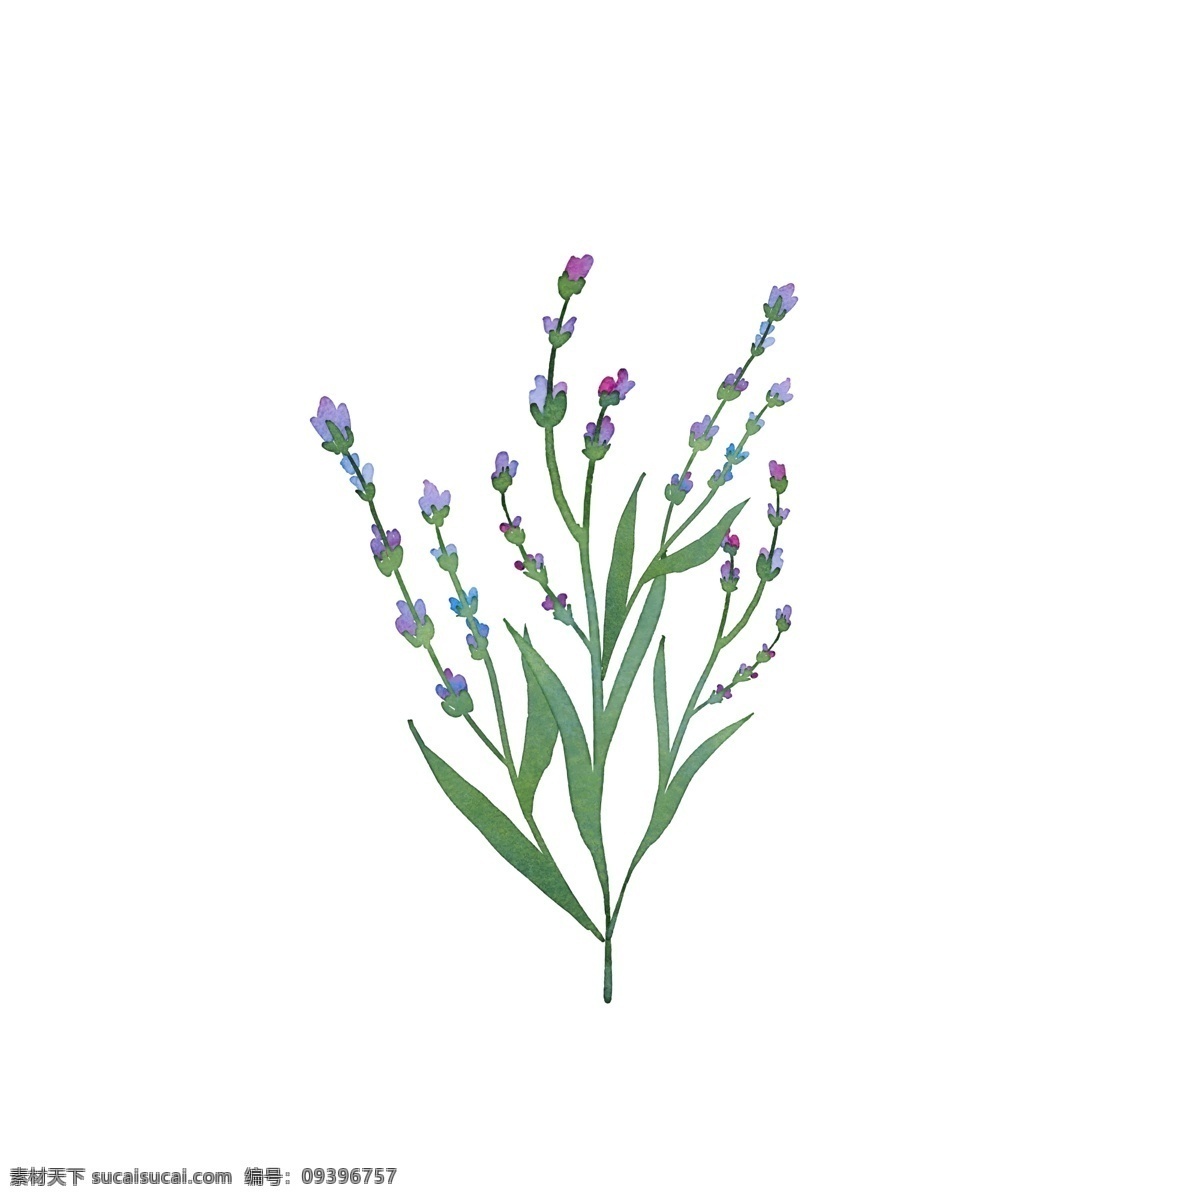 植物 花朵 紫色 小花 树枝 花香 迷人 叶子 花卉 漂亮 美丽 淡雅